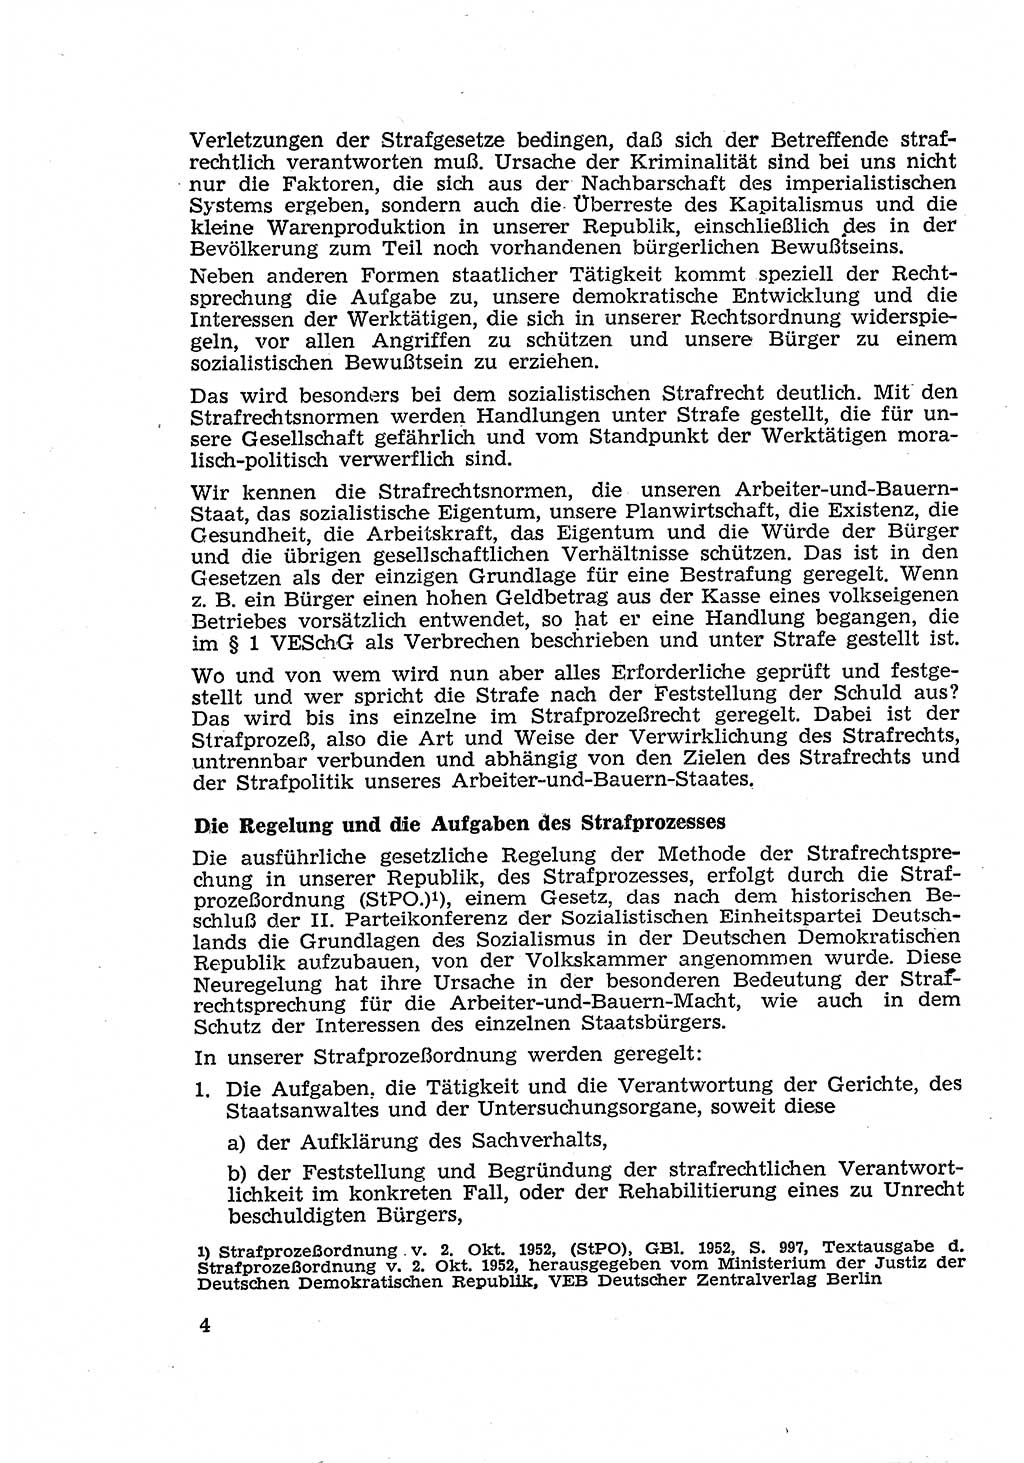 Strafverfahren in der Deutschen Demokratischen Republik (DDR) und seine demokratischen Prinzipien 1956, Seite 4 (Str.-Verf. DDR 1956, S. 4)